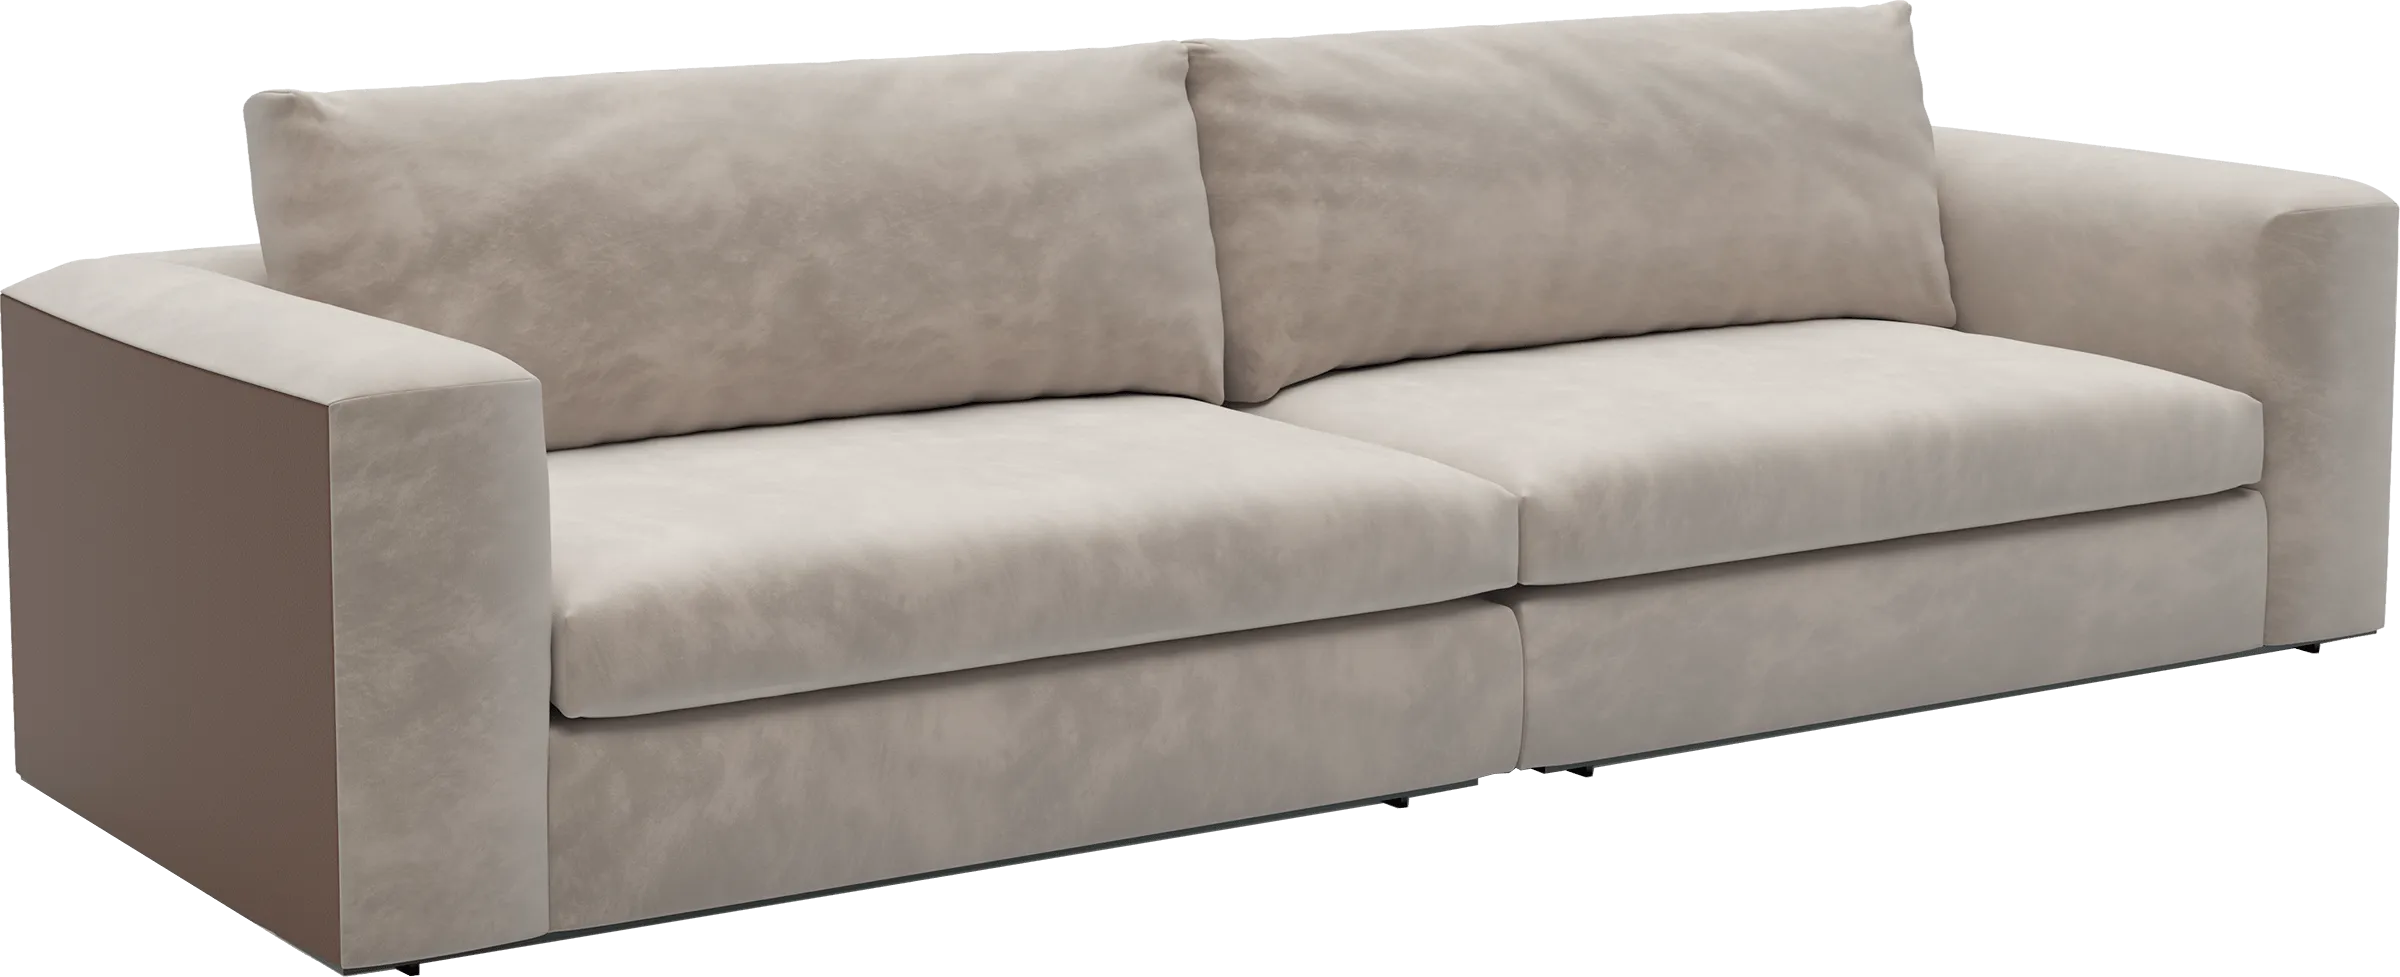 Cosily Modular Sofa